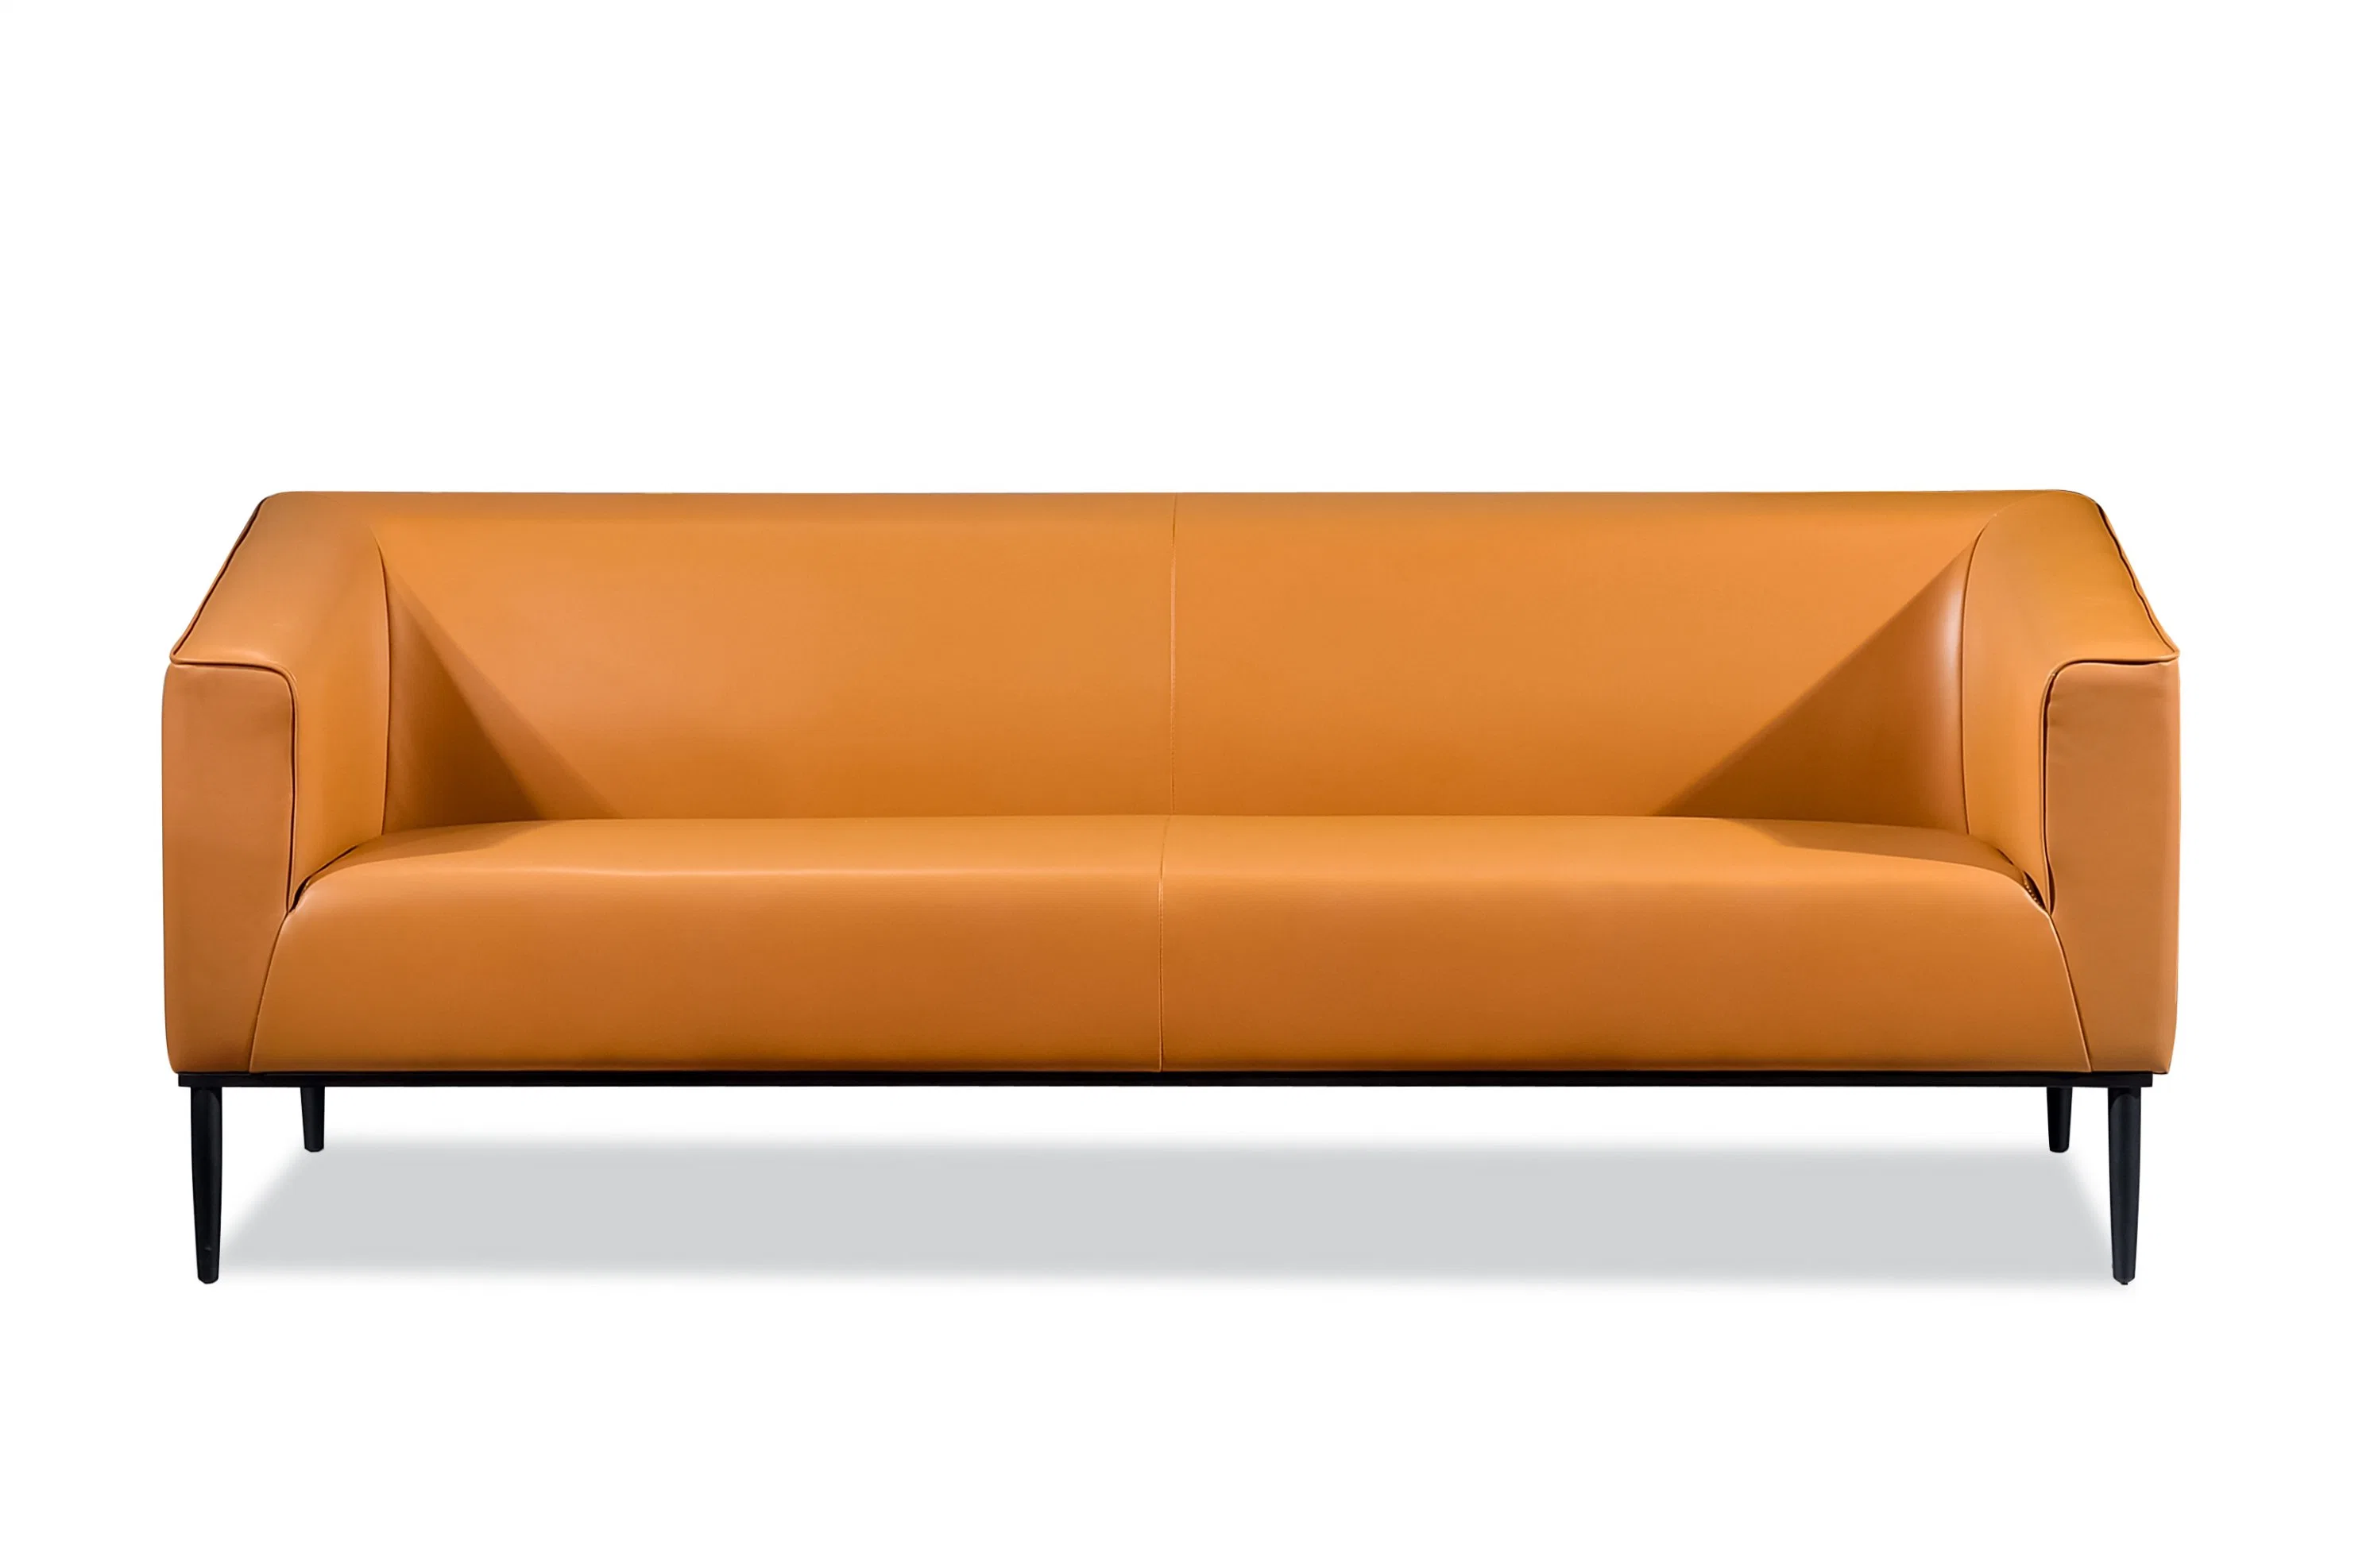 Штаты Америки Zode стиле популярных лучшие продажи гостиную мебелью в таблице для трех диван,